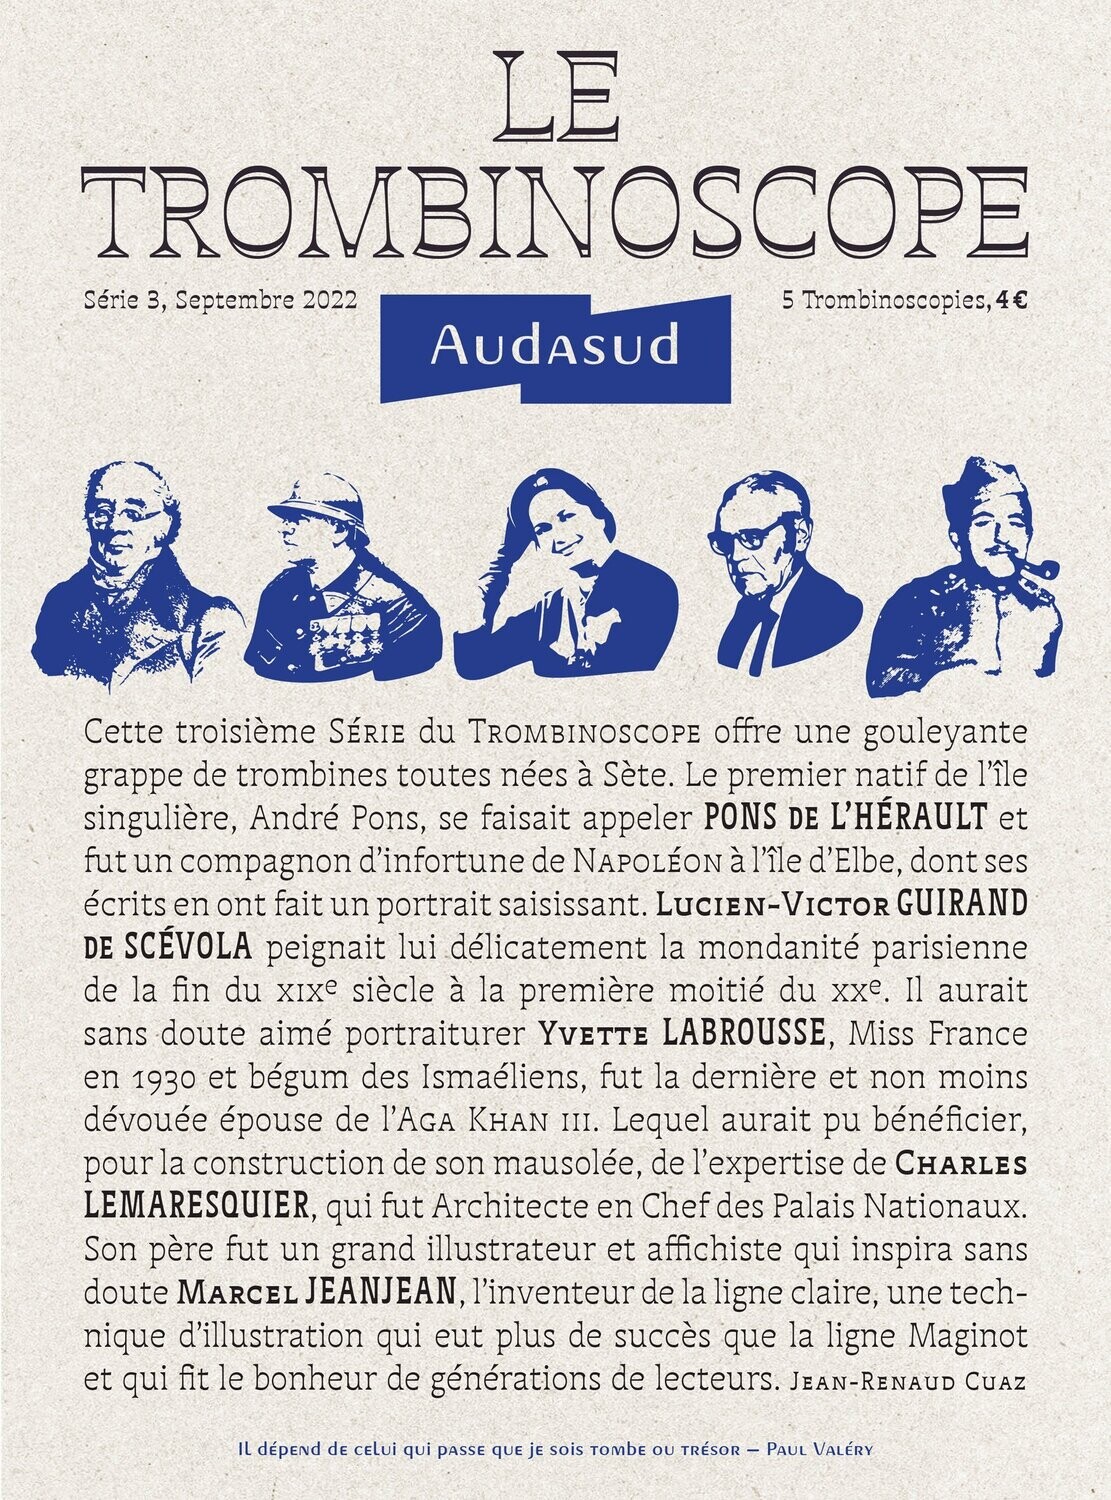 LE TROMBINOSCOPE Audasud - Série 3, 5 Trombinoscopies